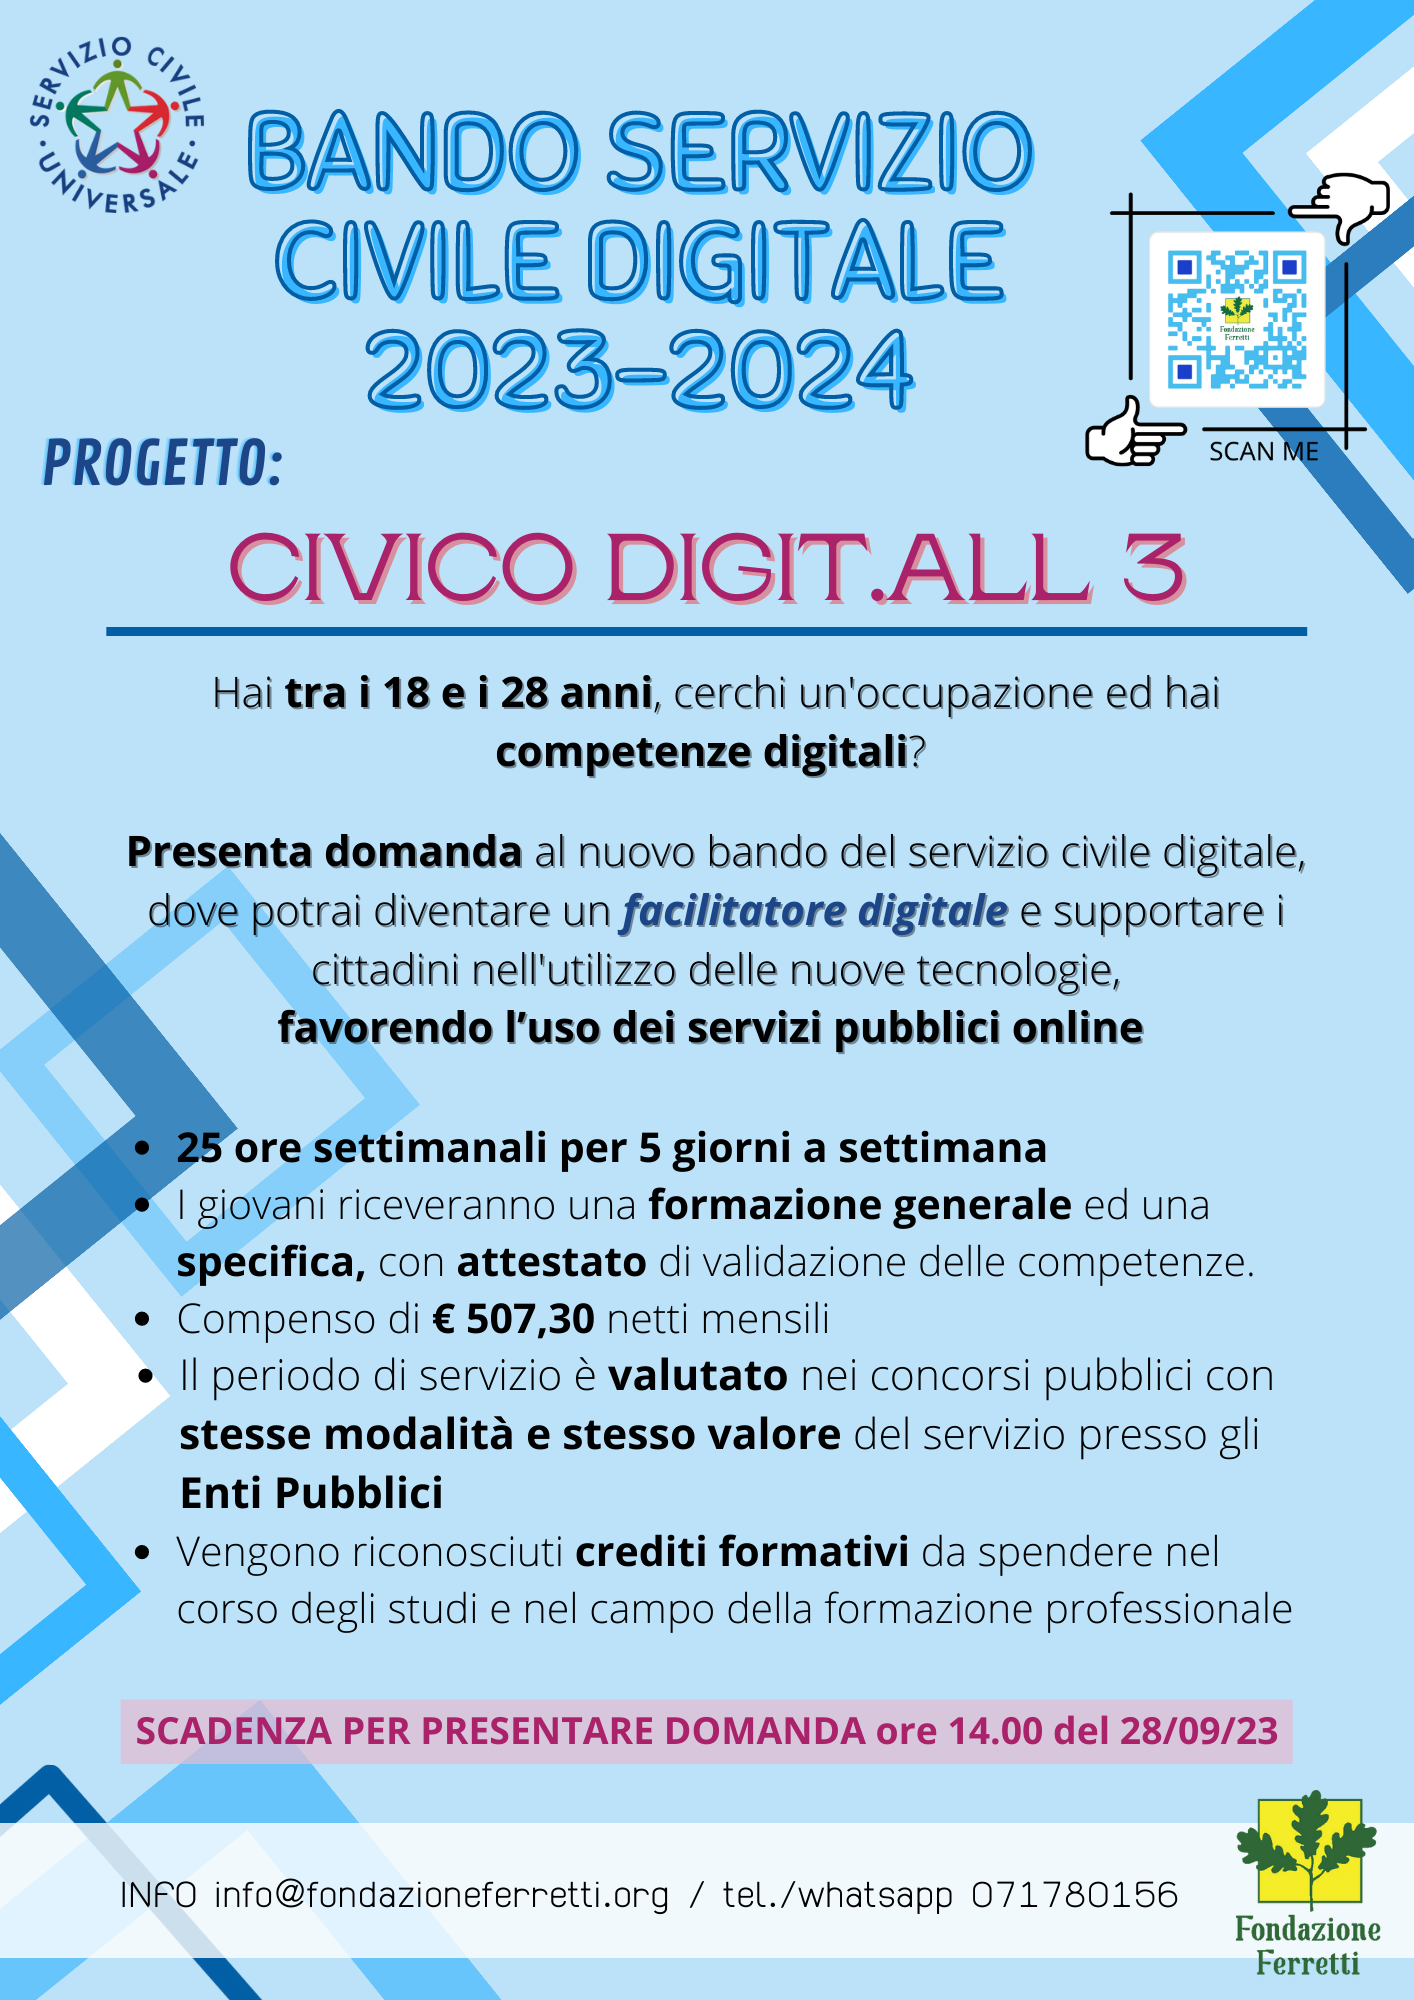 Volantino del bando servizio civile digitale 2023-24